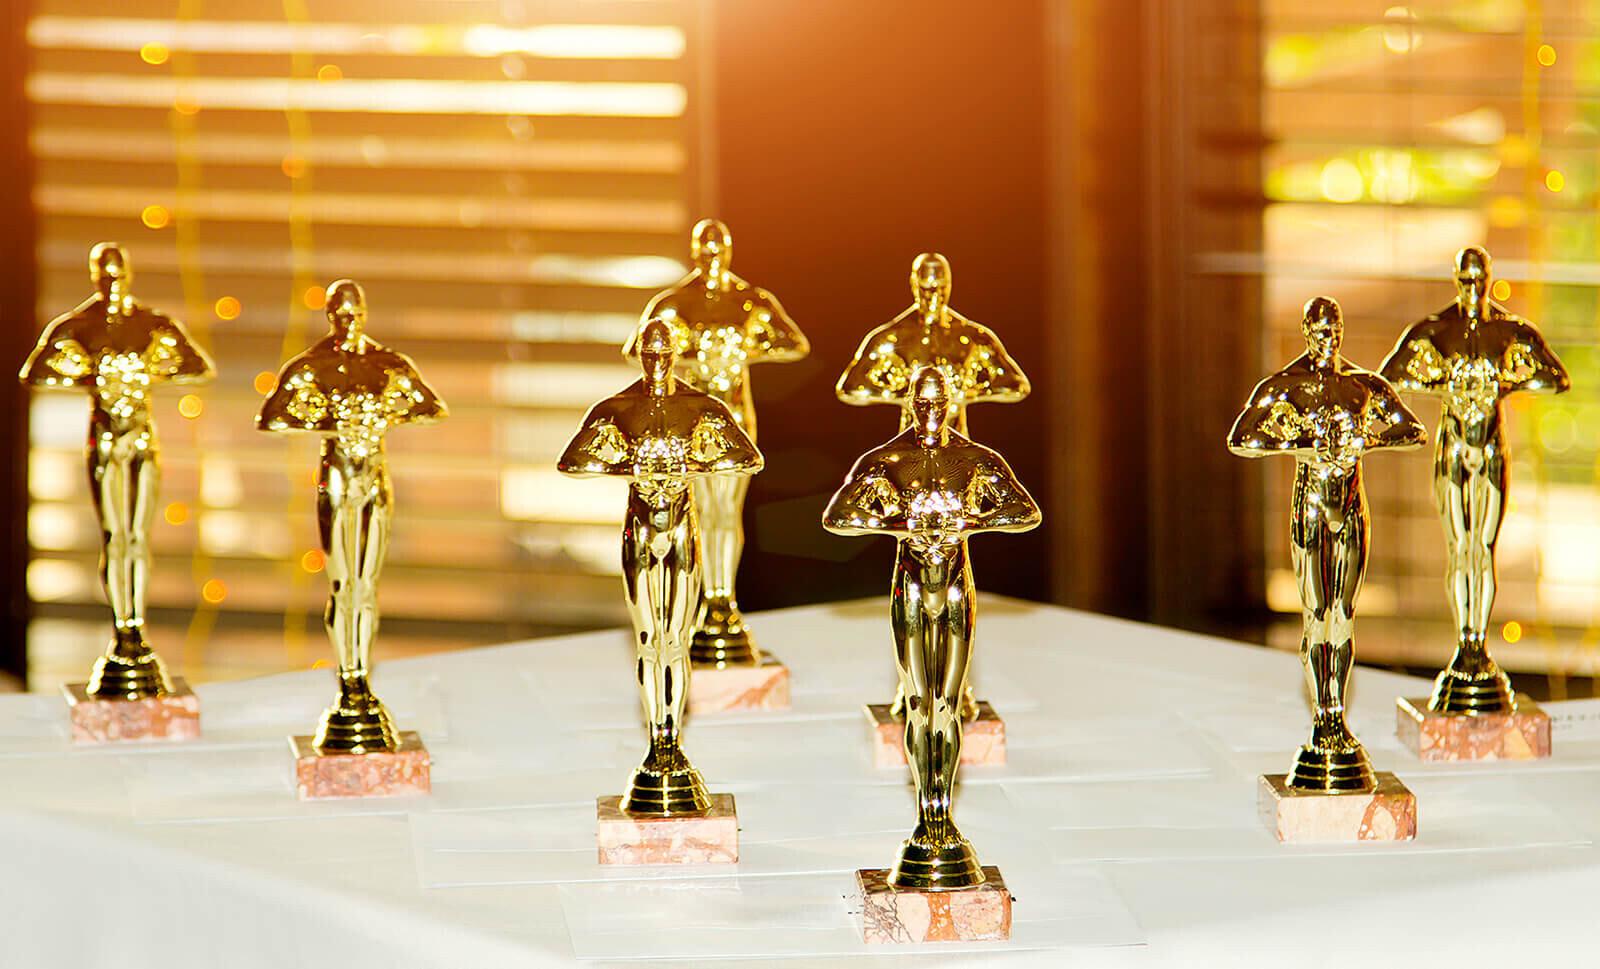 Jennifer Connelly - 73rd Emmy Awards - 6